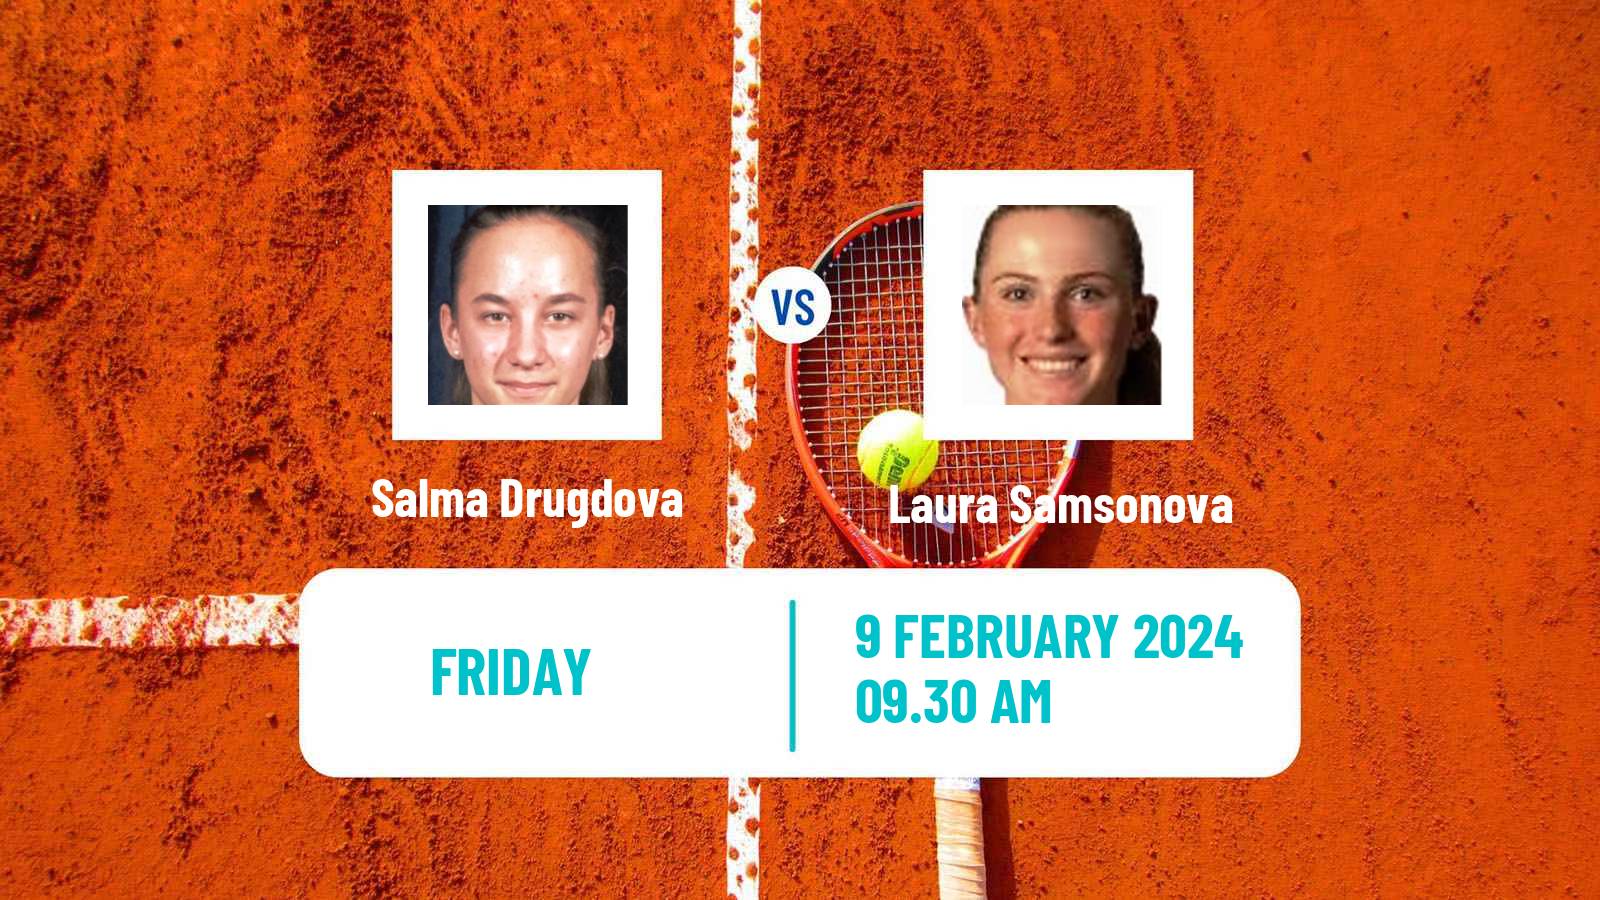 Tennis ITF W15 Monastir 4 Women Salma Drugdova - Laura Samsonova